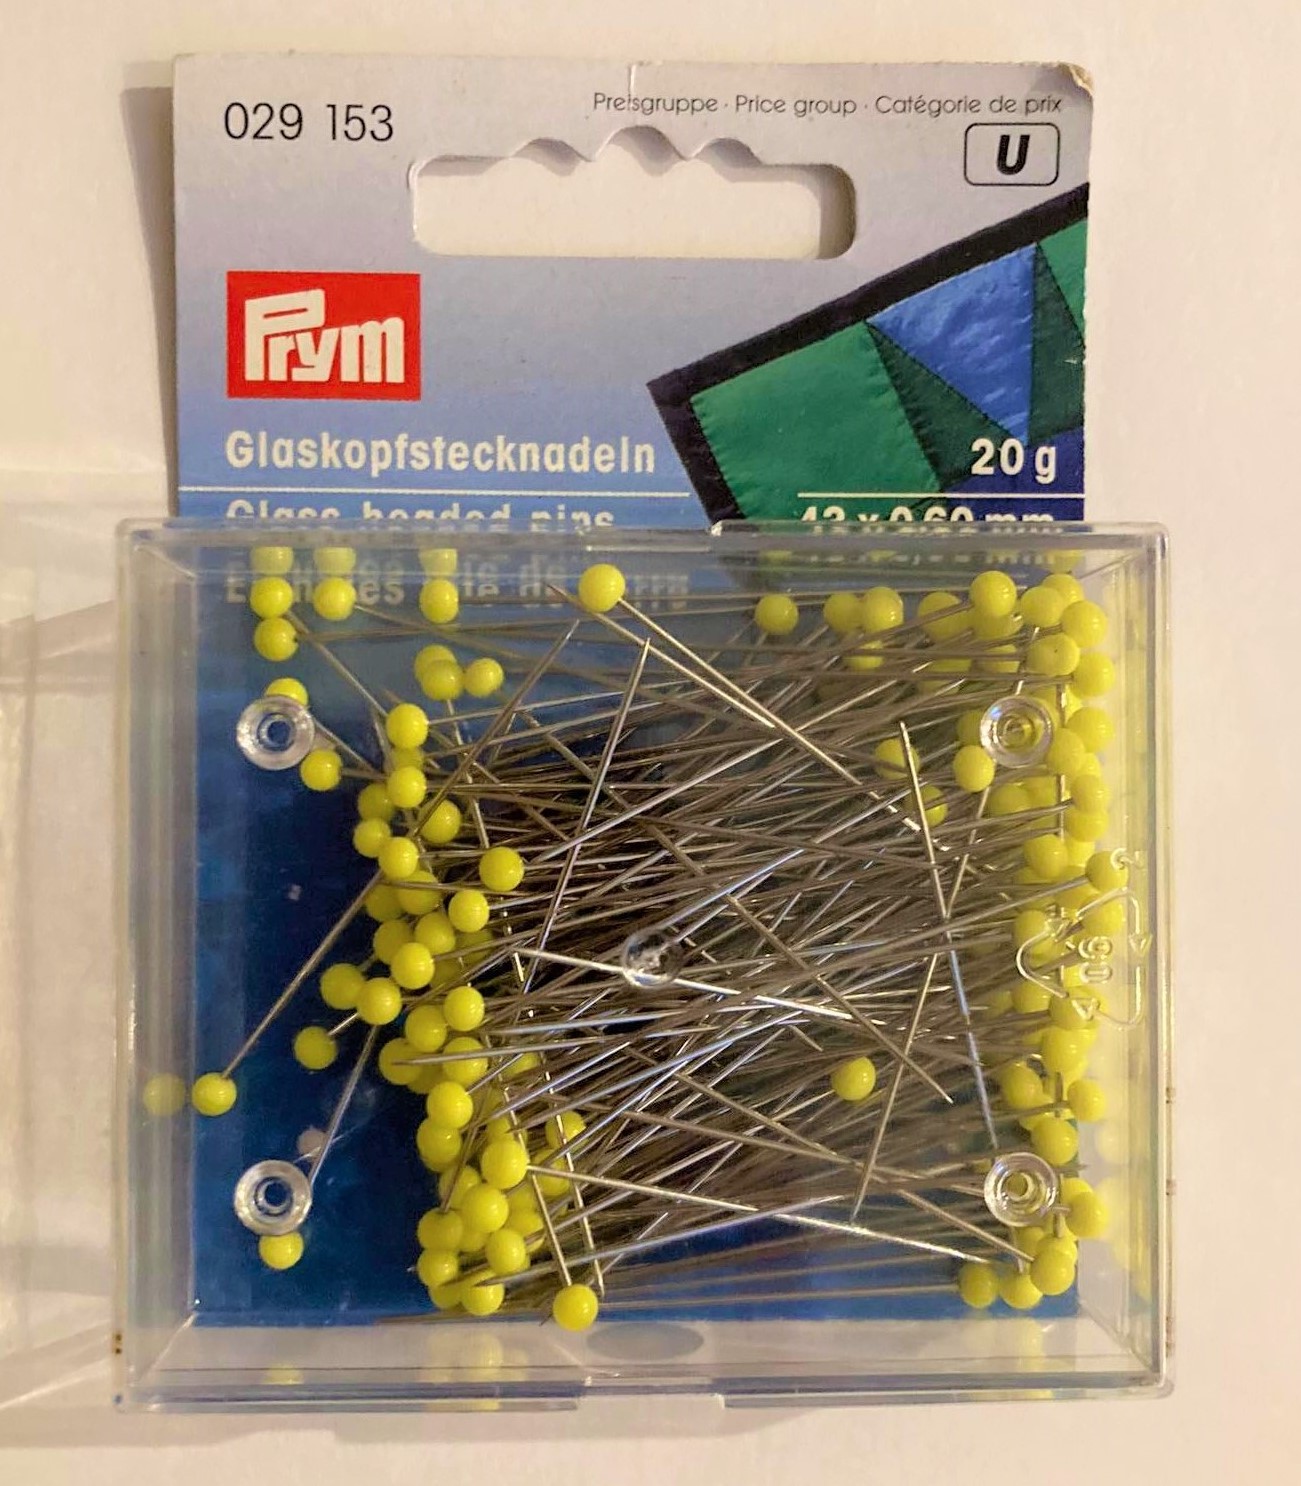 Prym Glass-headed pins, extra long, yellow, 20g / เข็มหัวแก้วสีเหลือง ยาวพิเศษ 20 กรัม แบรนด์ Prym จากประเทศเยอรมนี (G029153)